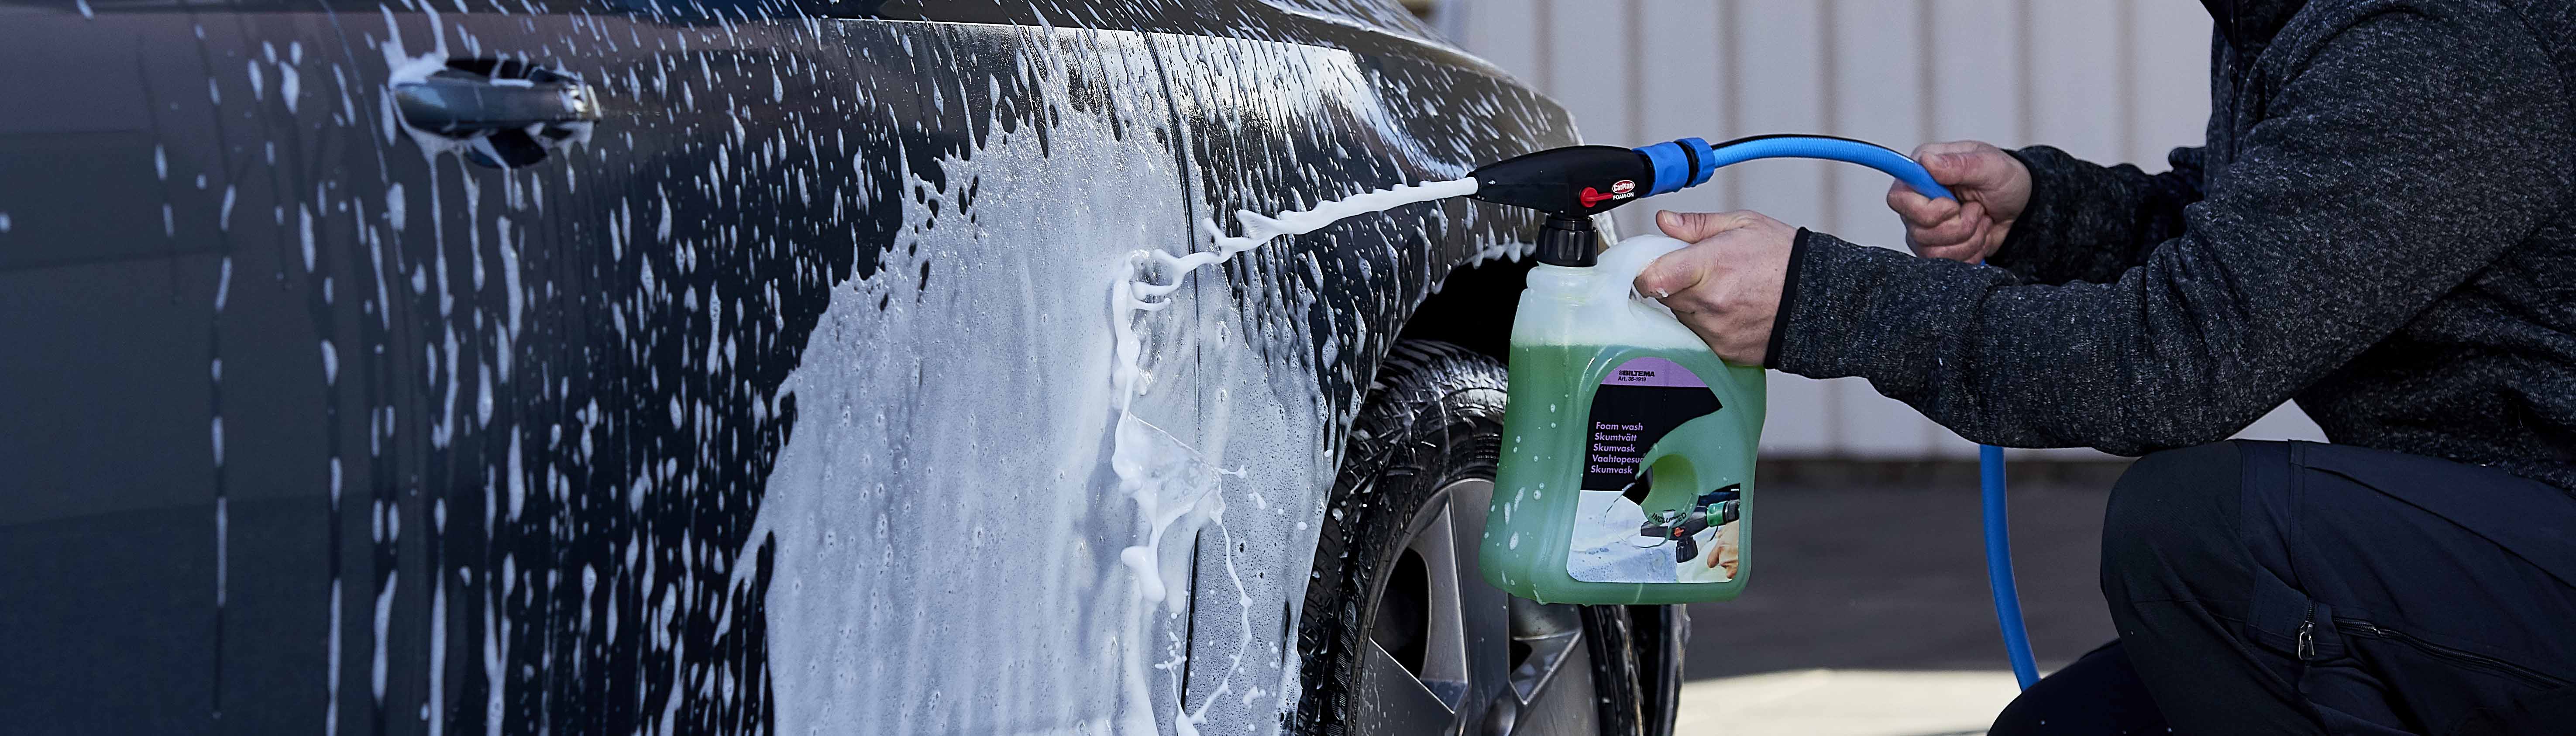 Biltvätt – säg hejdå till smuts och damm